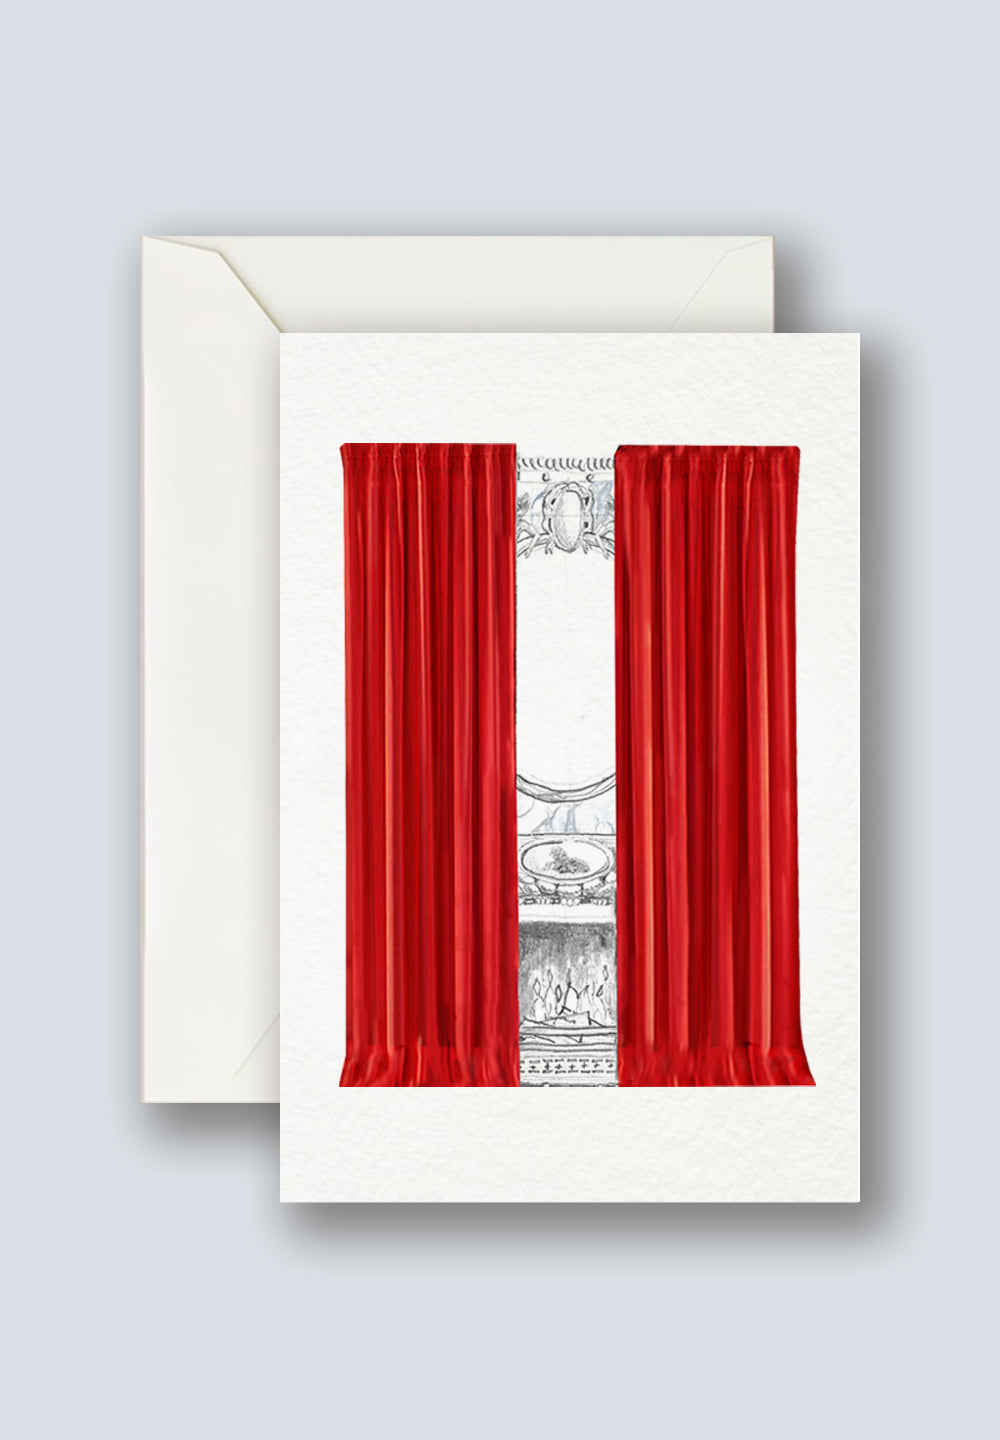 Miragi AR Interactive Christmas Card - Red Curtain Call